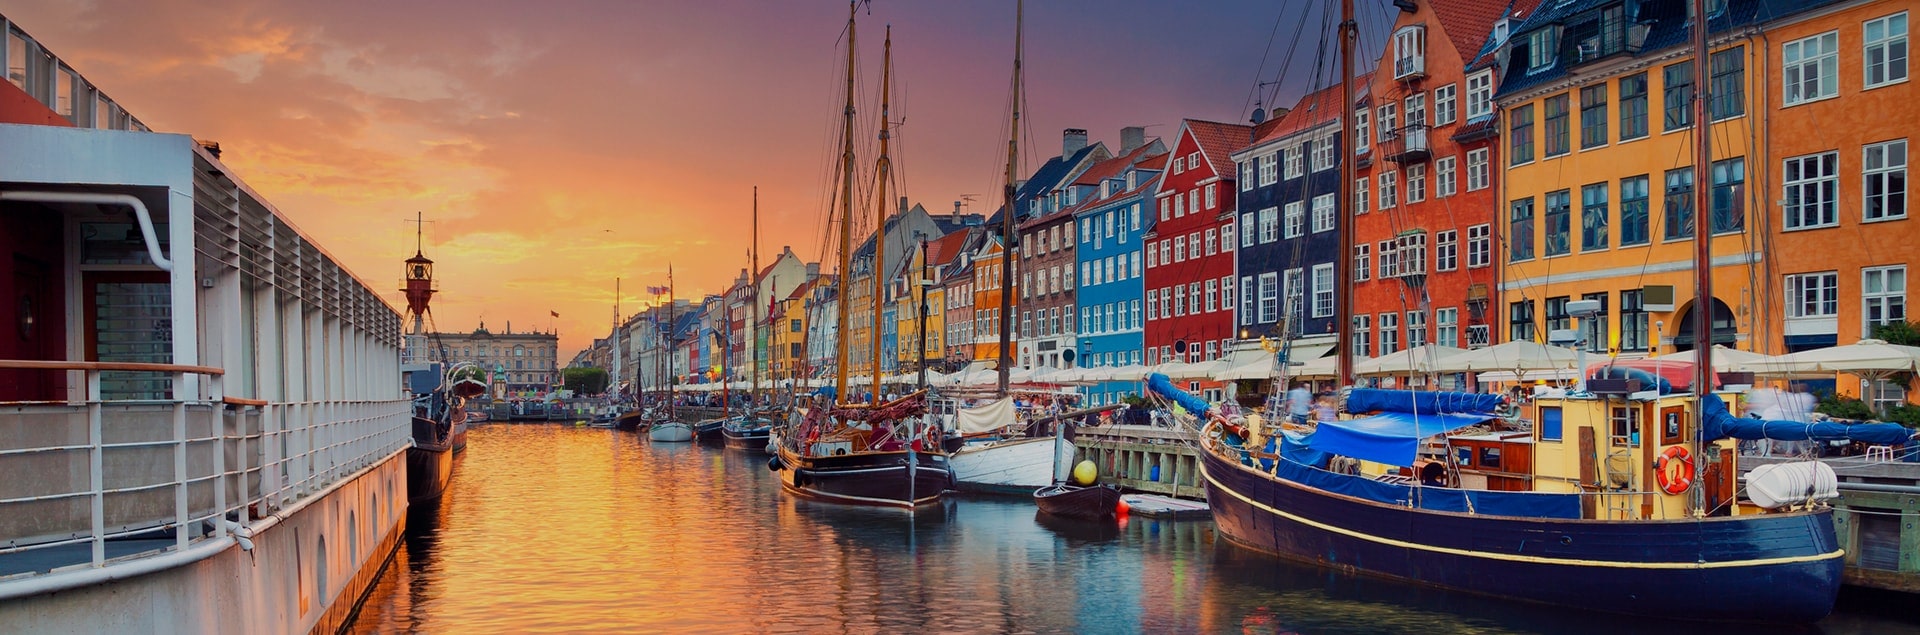 Що подивитись і чим зайнятися в Копенгагені? ТОП 10 місць